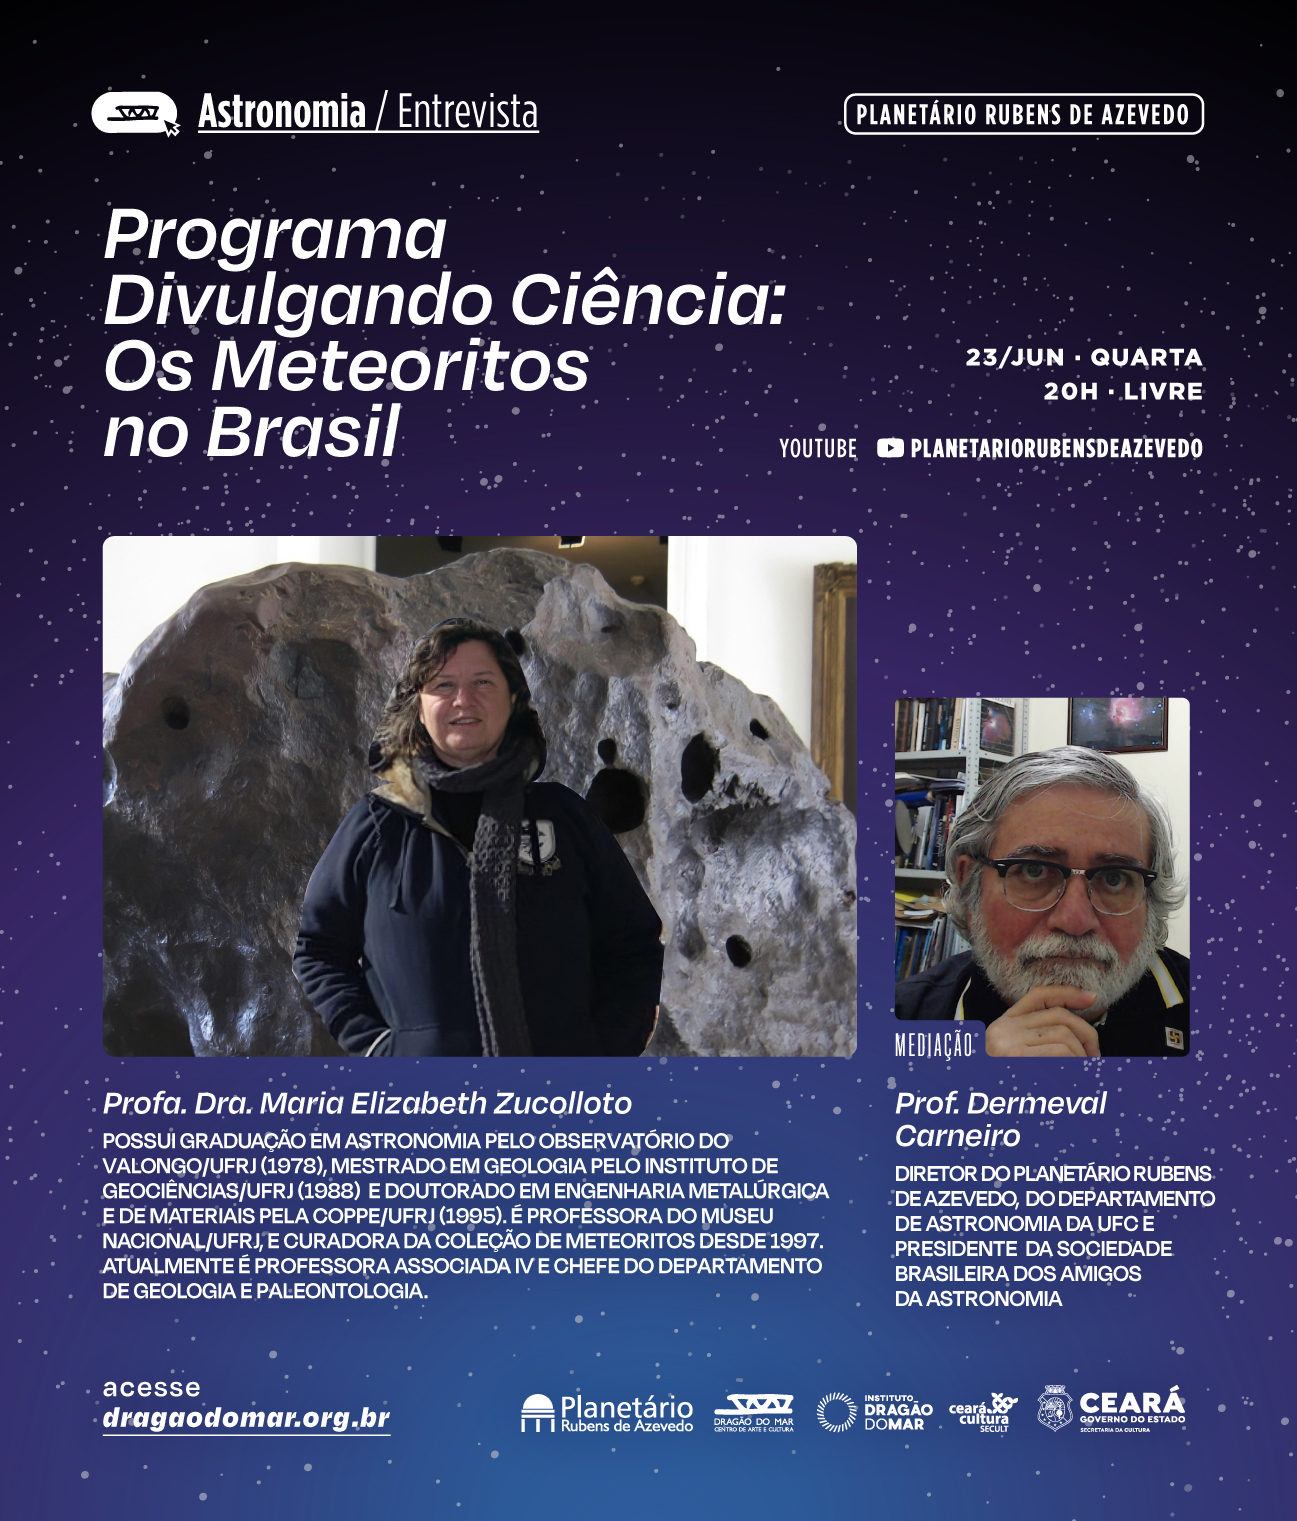 Planetário do Dragão do Mar presenta una entrevista sobre meteoritos con un científico famoso el miércoles (23)